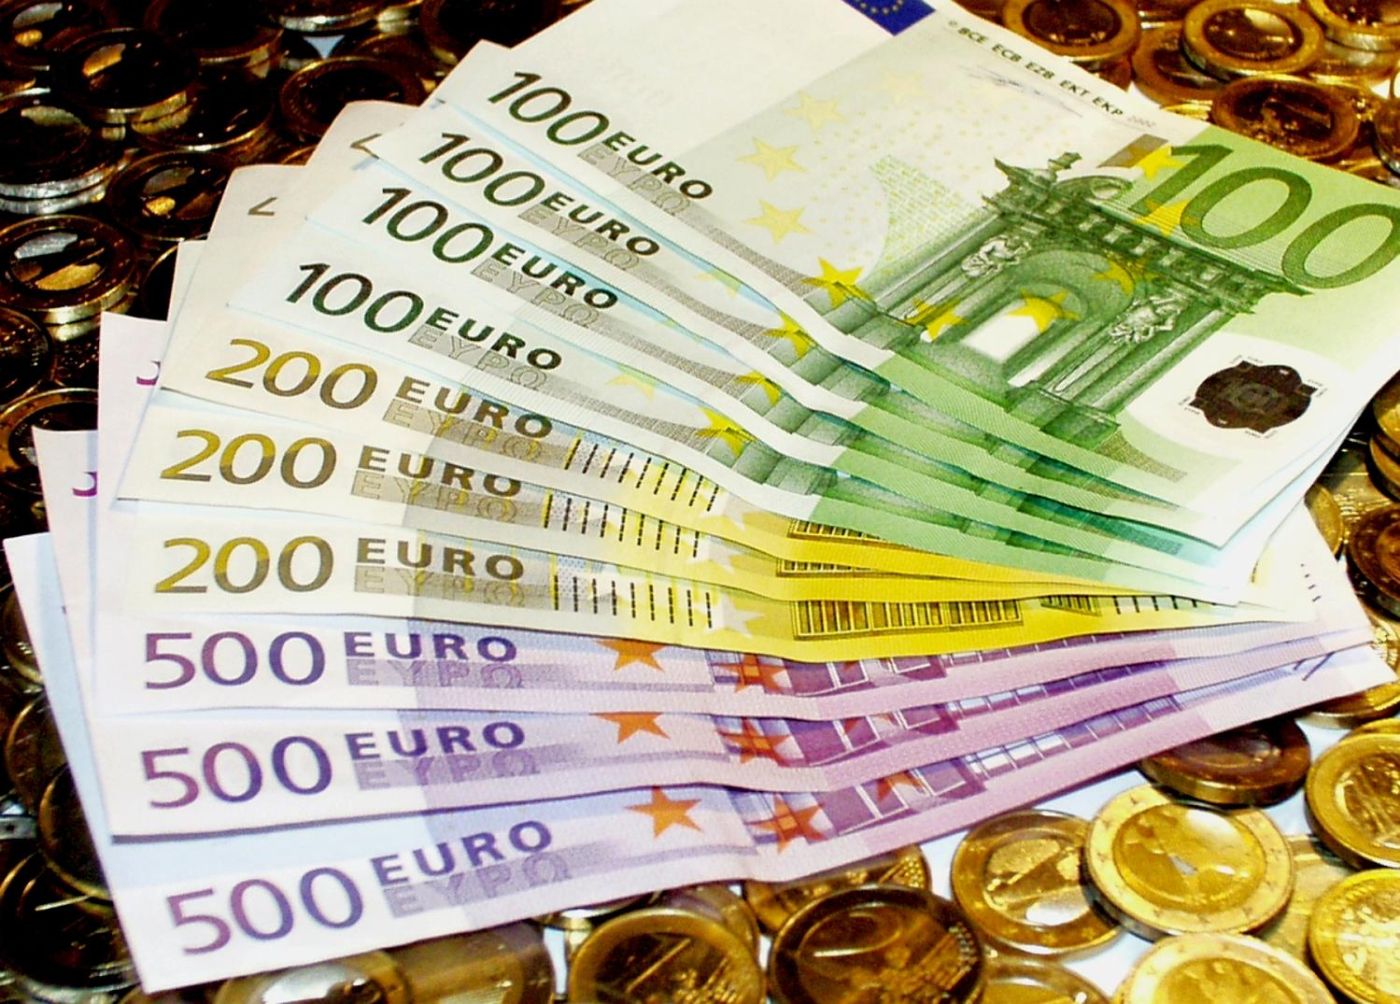 Ο «θάνατος του εμποράκου»: Έρχεται και ο «λογαριασμός» ύψους 3 δισ. ευρώ της επιστρεπτέας προκαταβολής για τις επιχειρήσεις